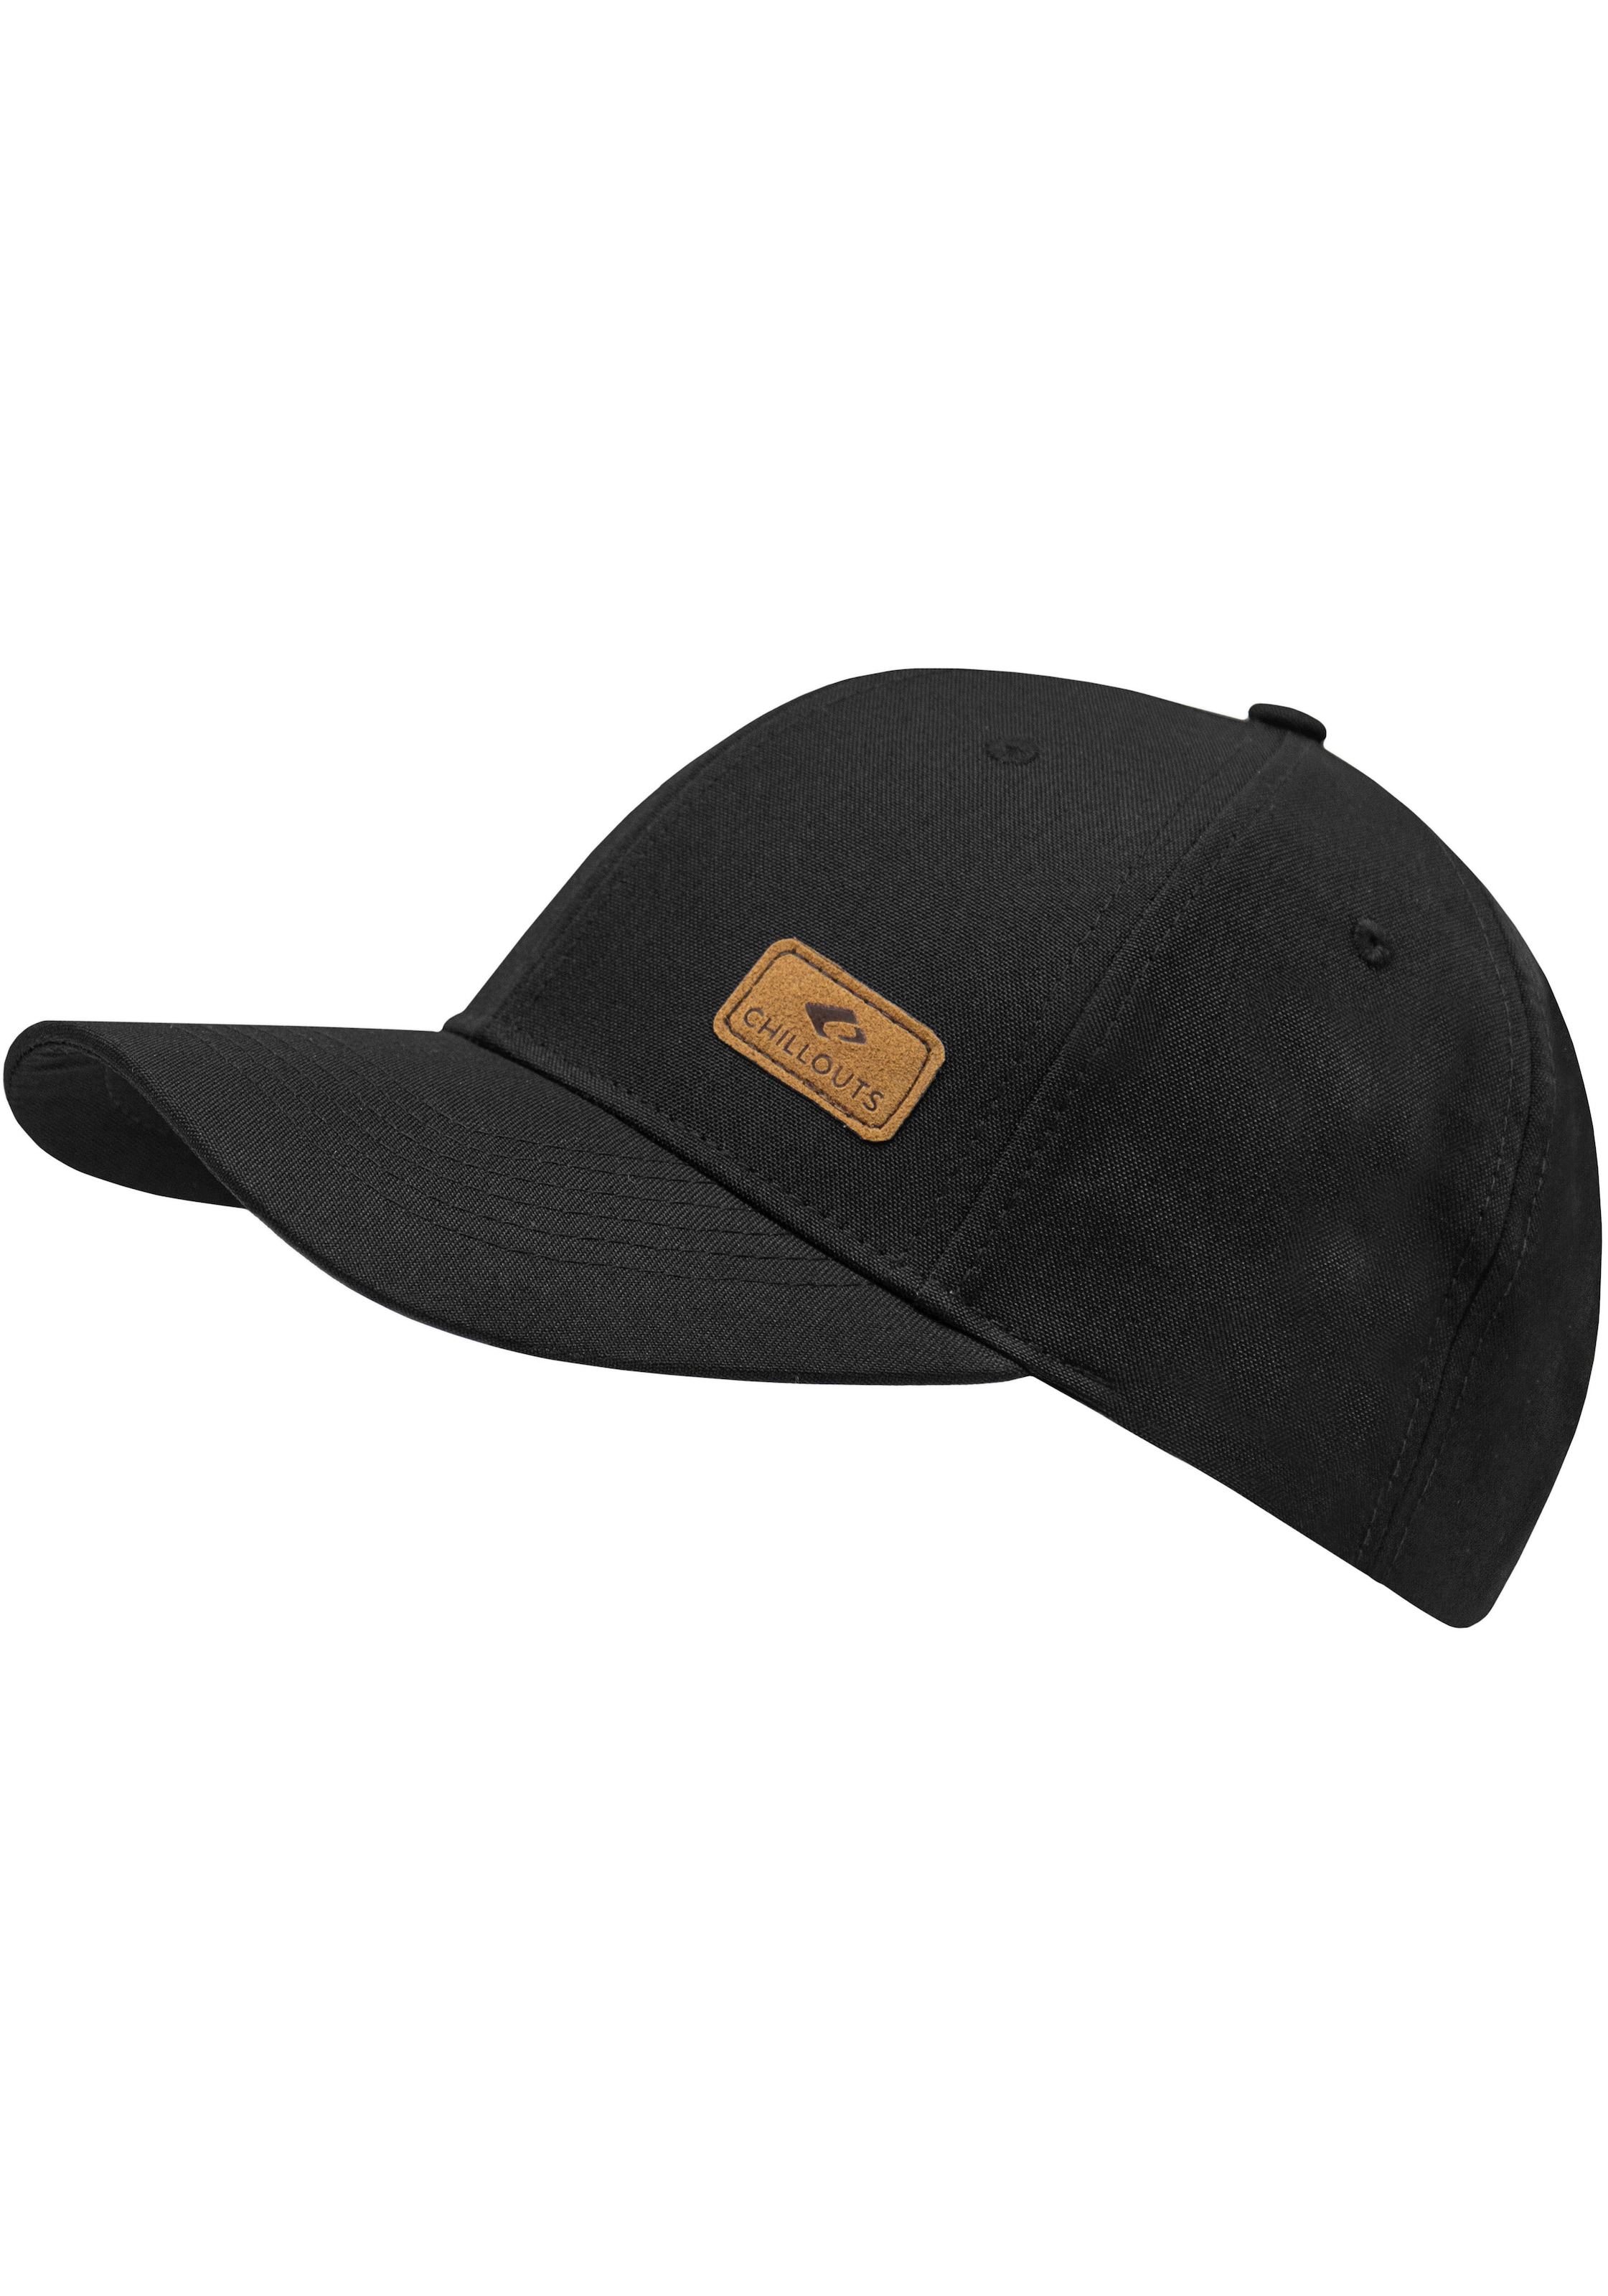 Optik, melierter Amadora Online-Shop One kaufen im Baseball Hat Cap, Size, in verstellbar chillouts